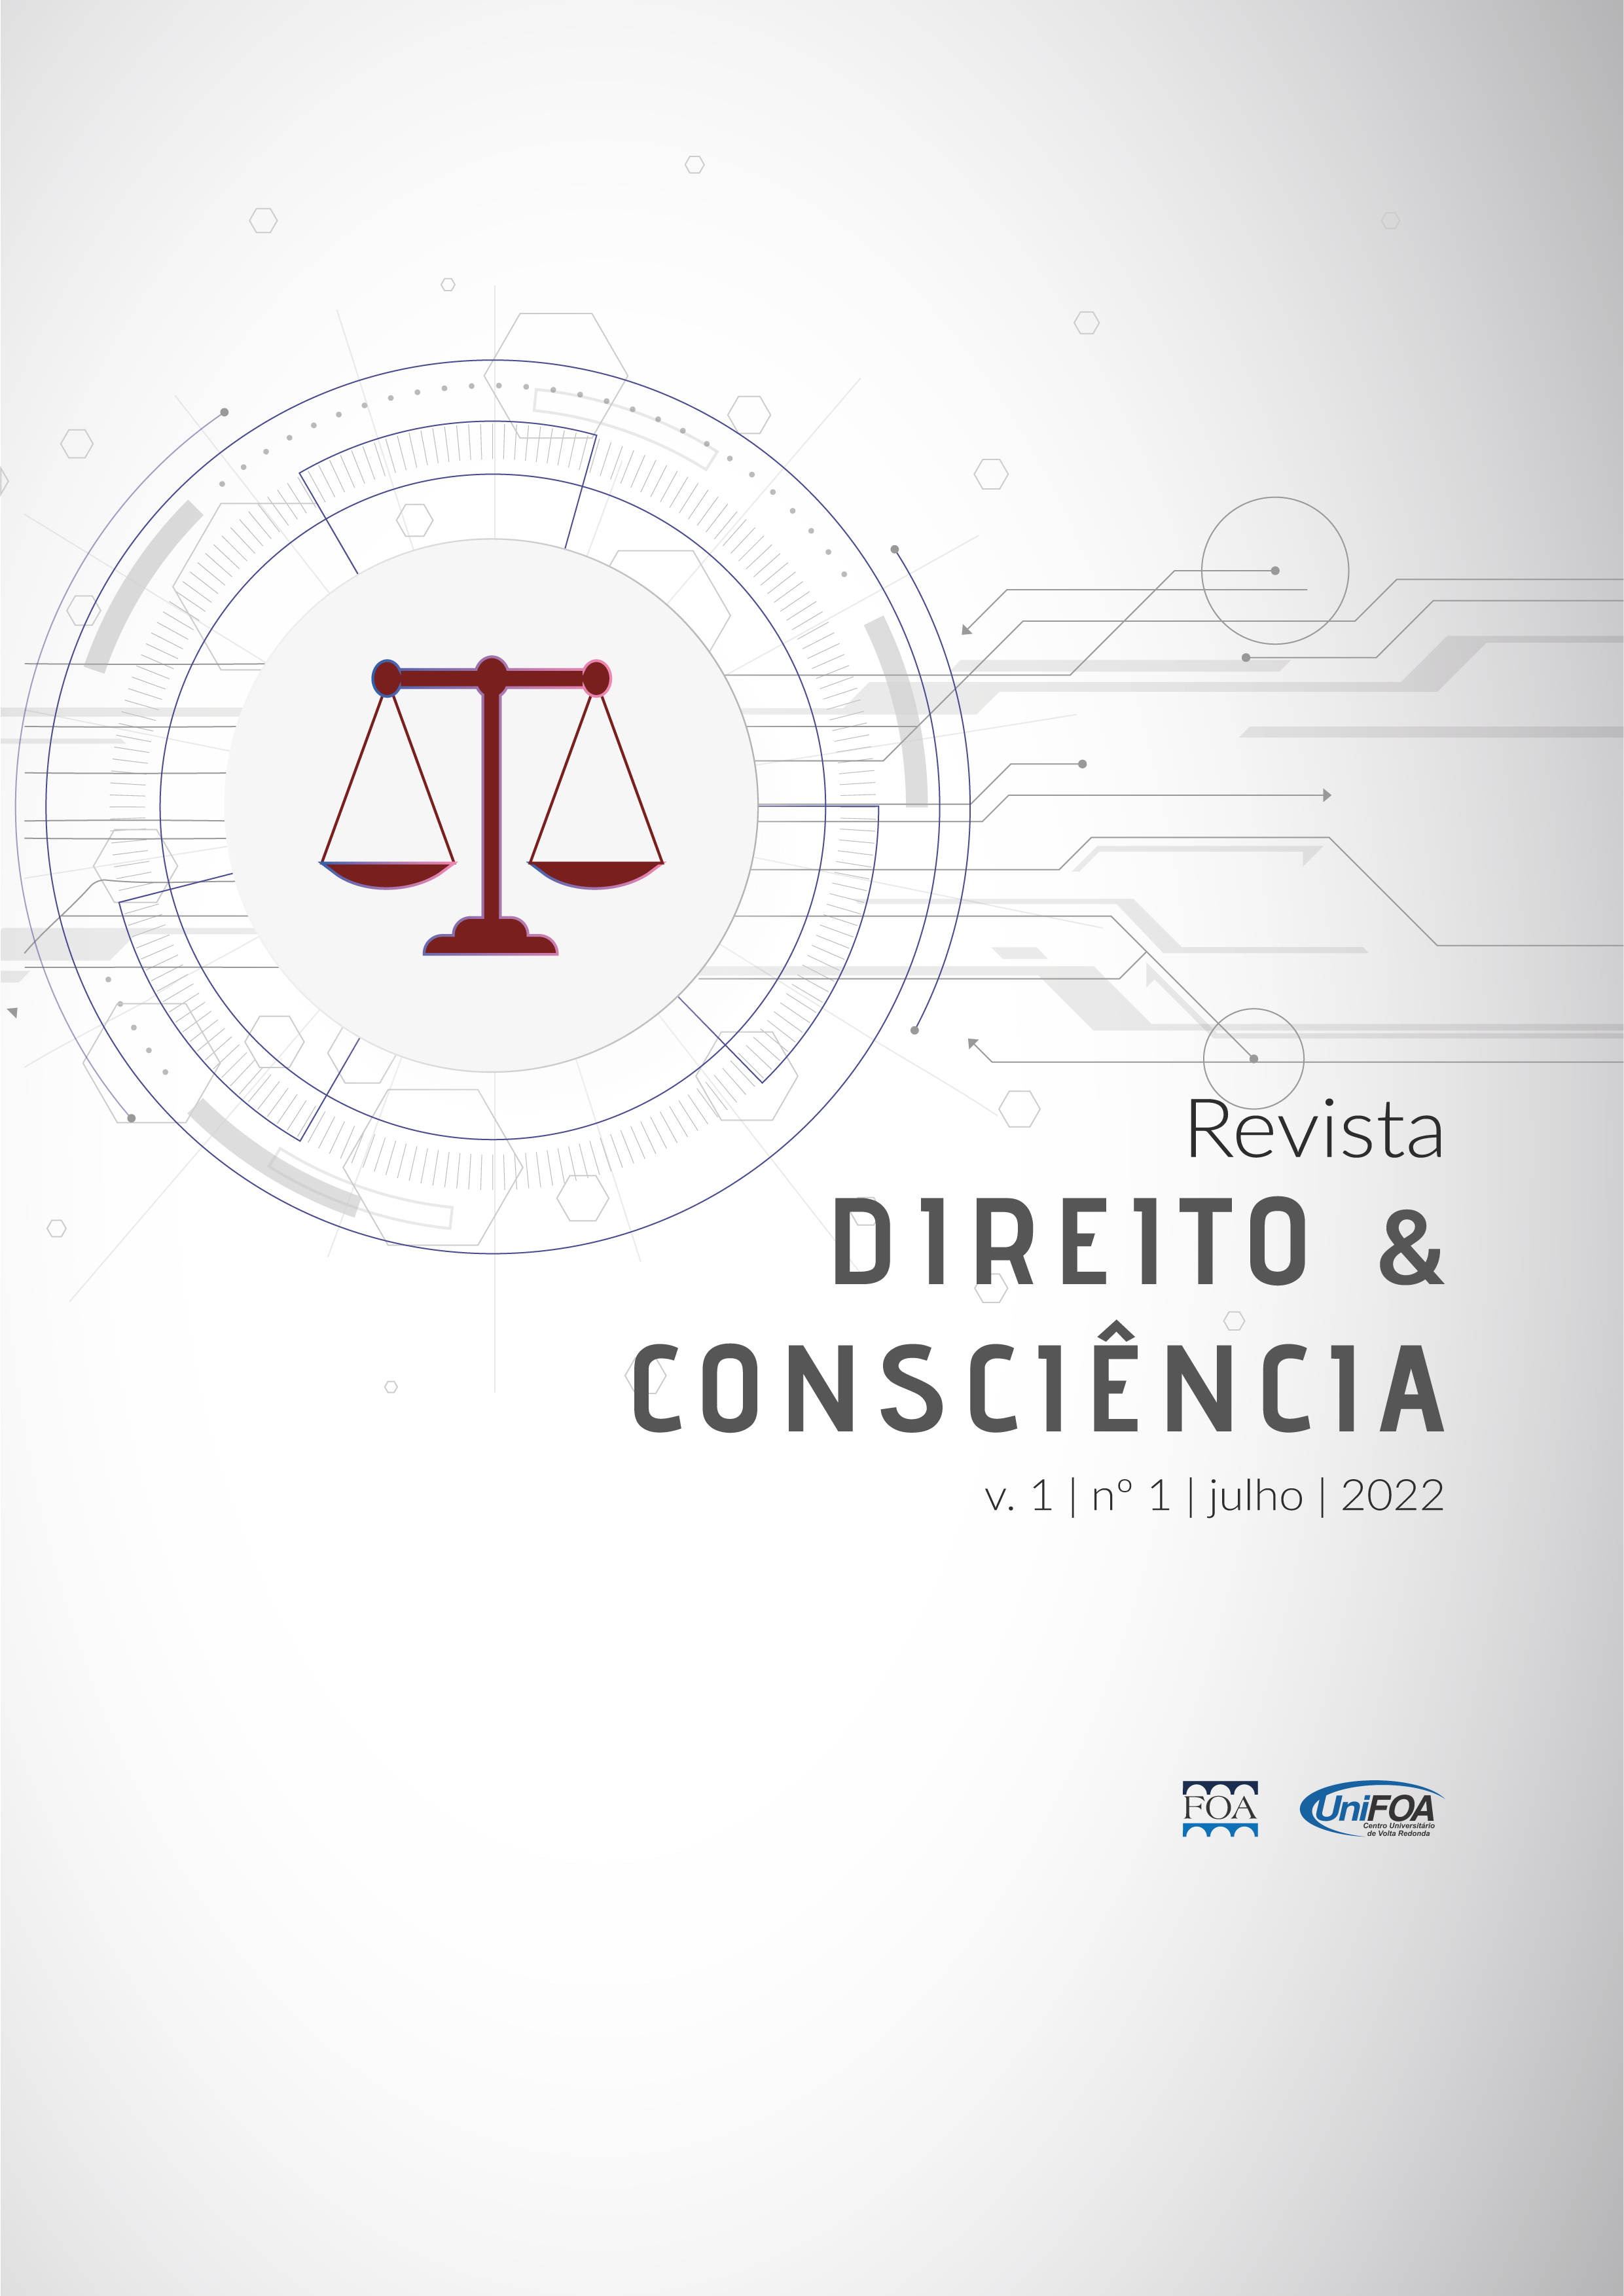 					Visualizar v. 1 n. 1 (2022): Revista Direito & Consciência
				